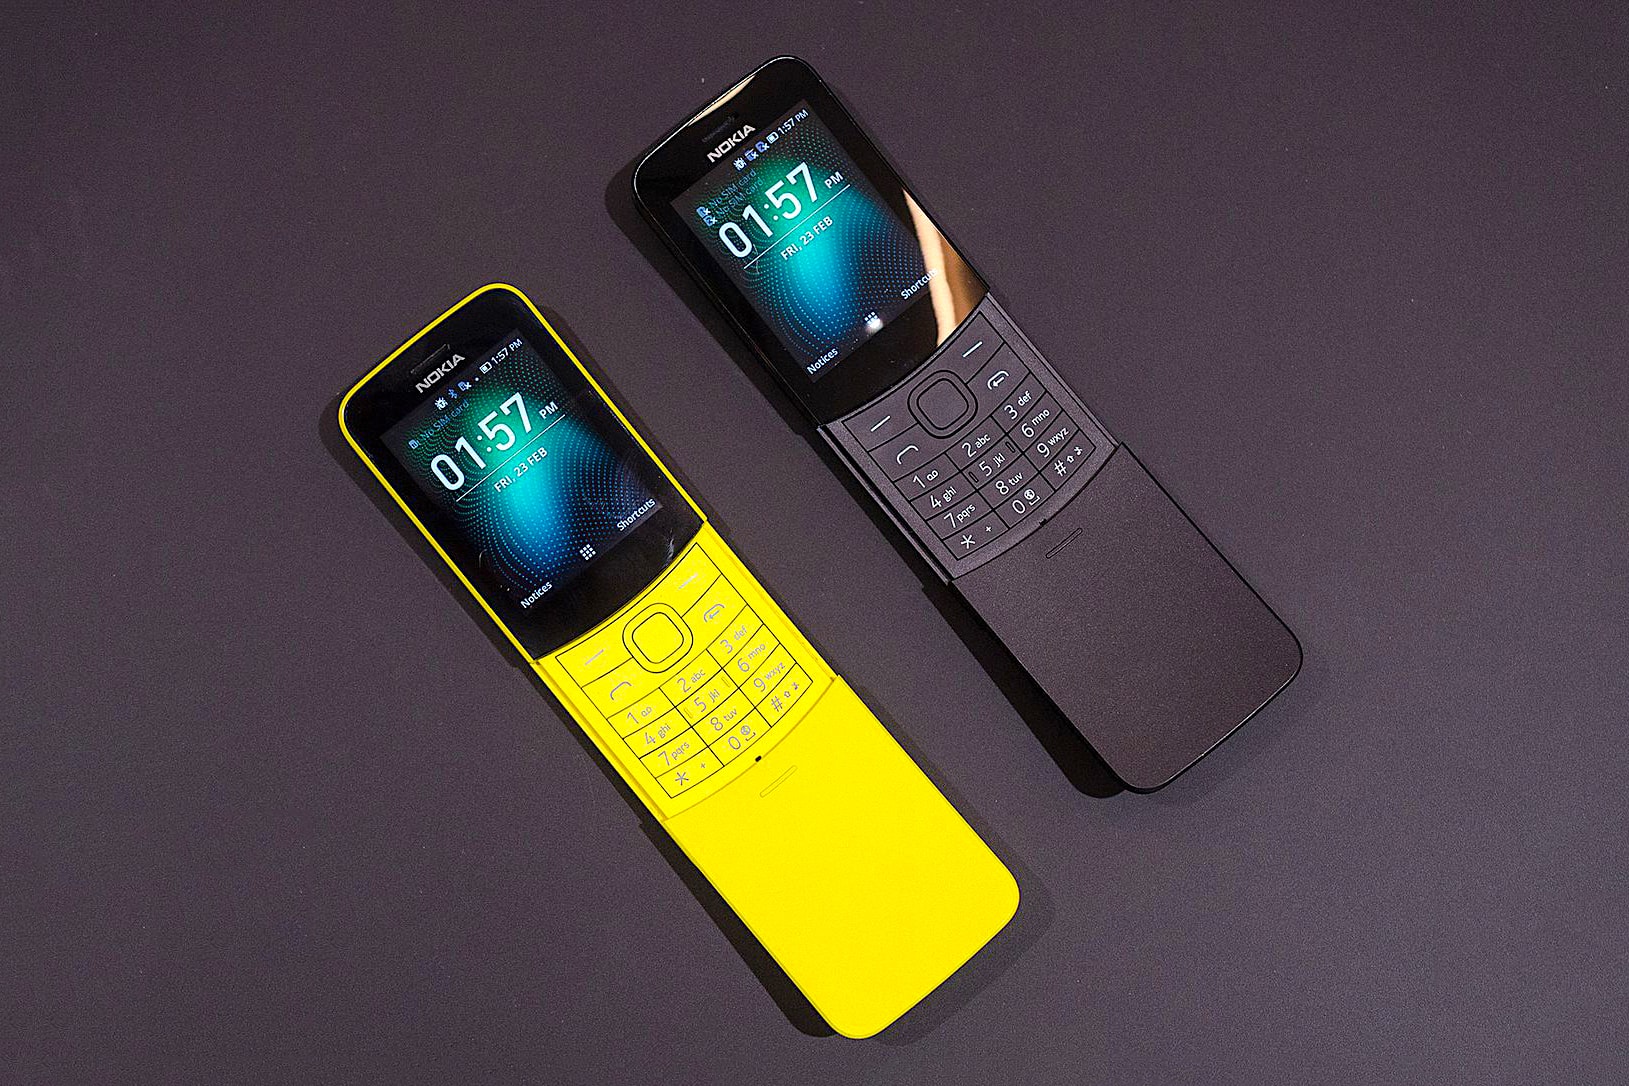 Nokia 重新復刻《The Matrix》中的經典下滑蓋手機 8110